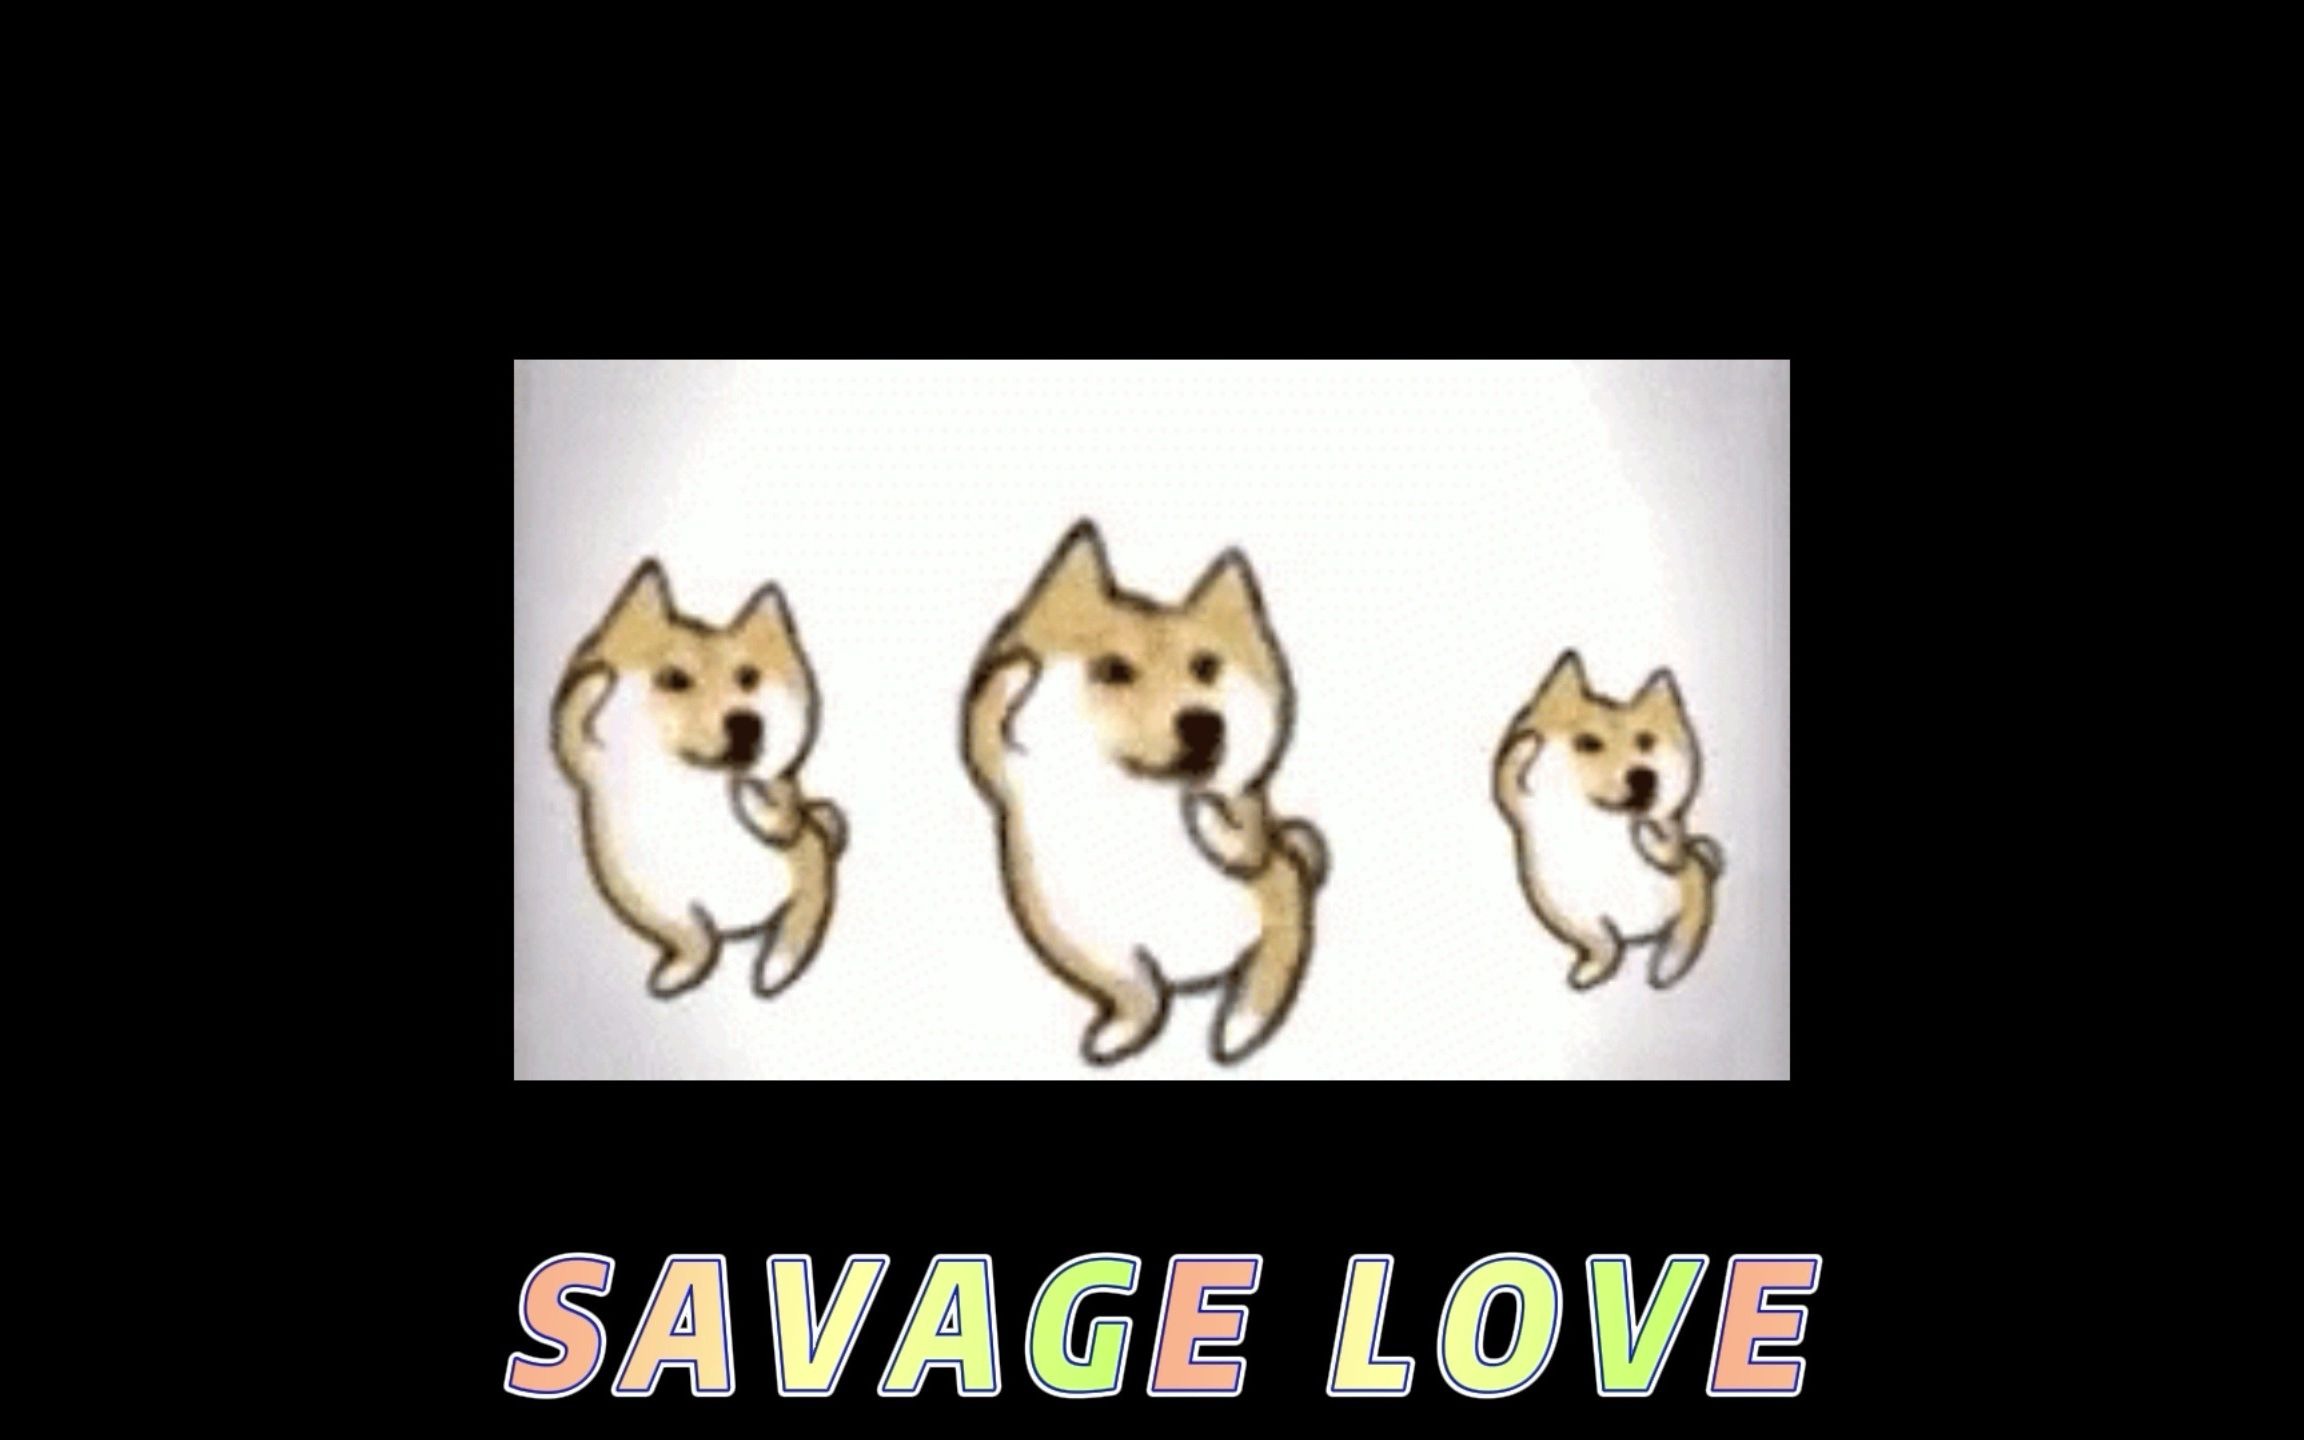 Savage love